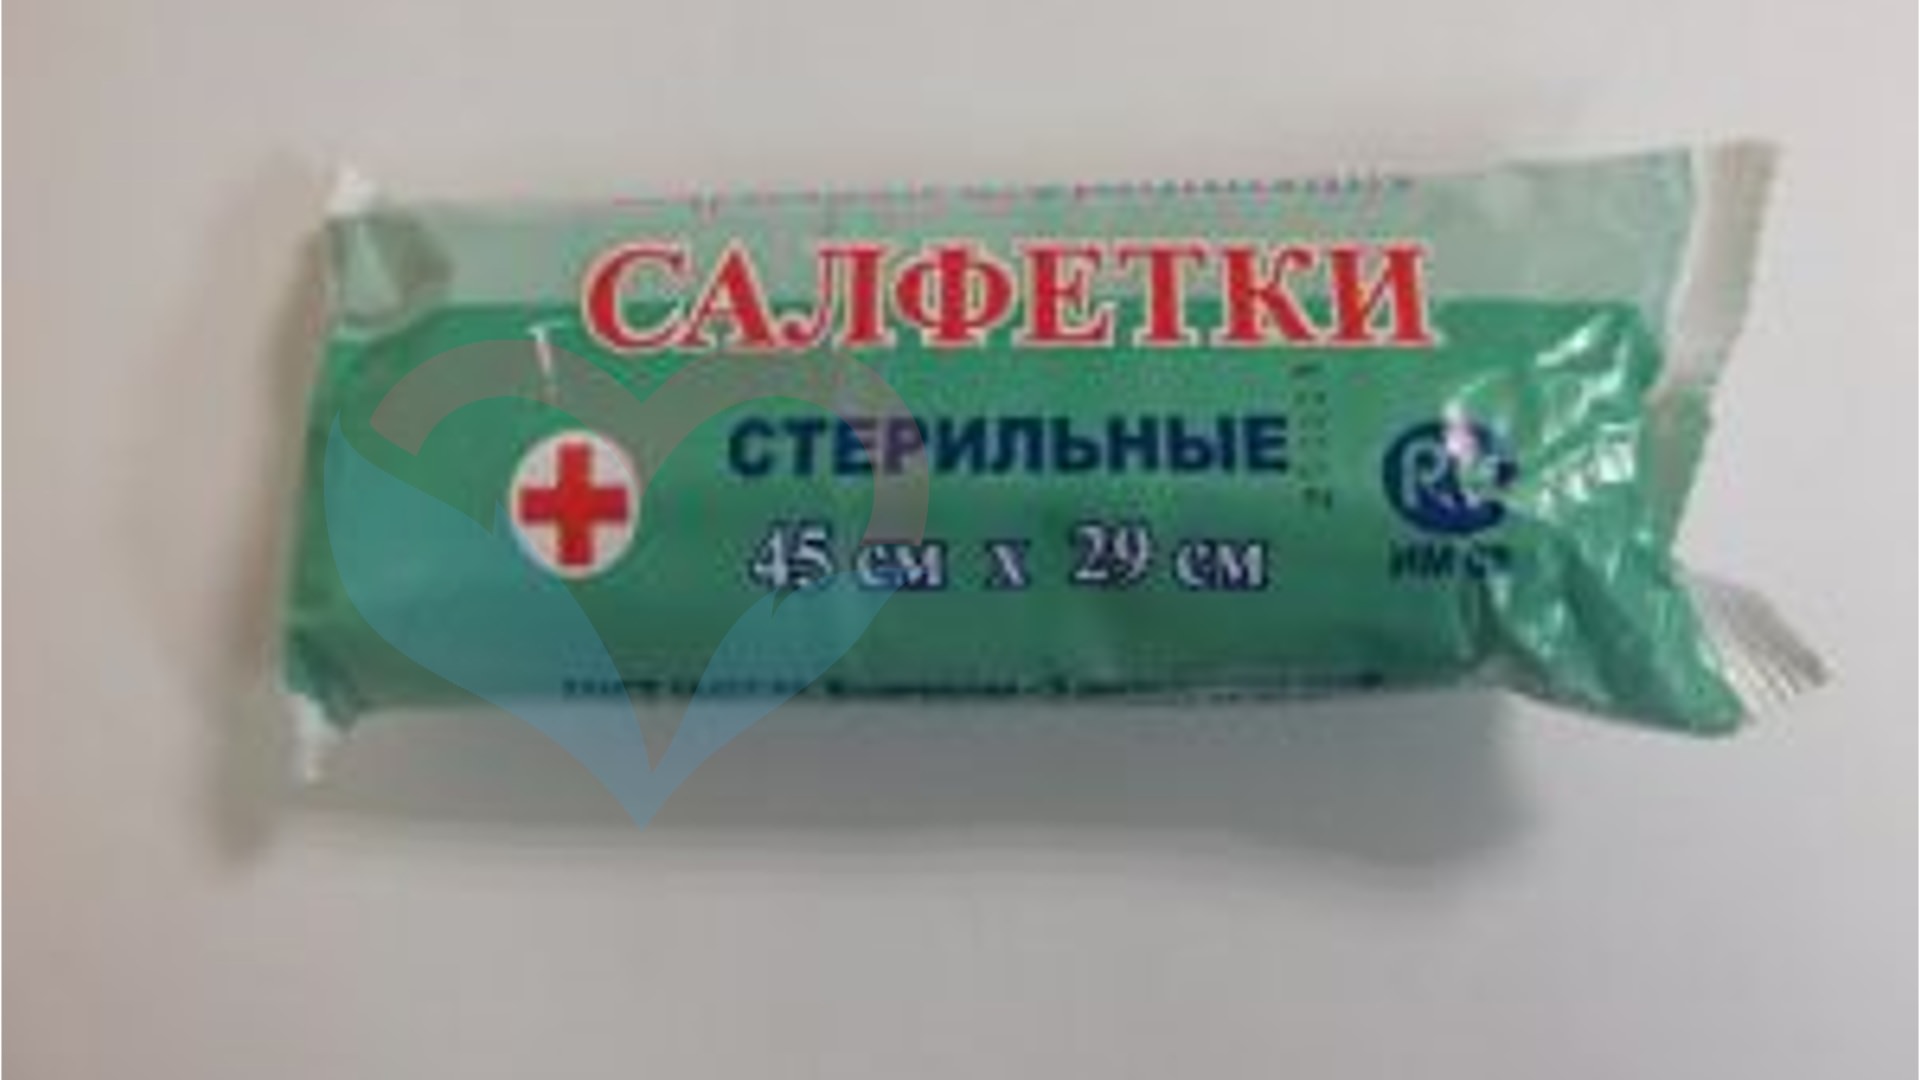 NF Салфетки марлевые медицинские стерильные 45 х 29 №5 (28г/м2)